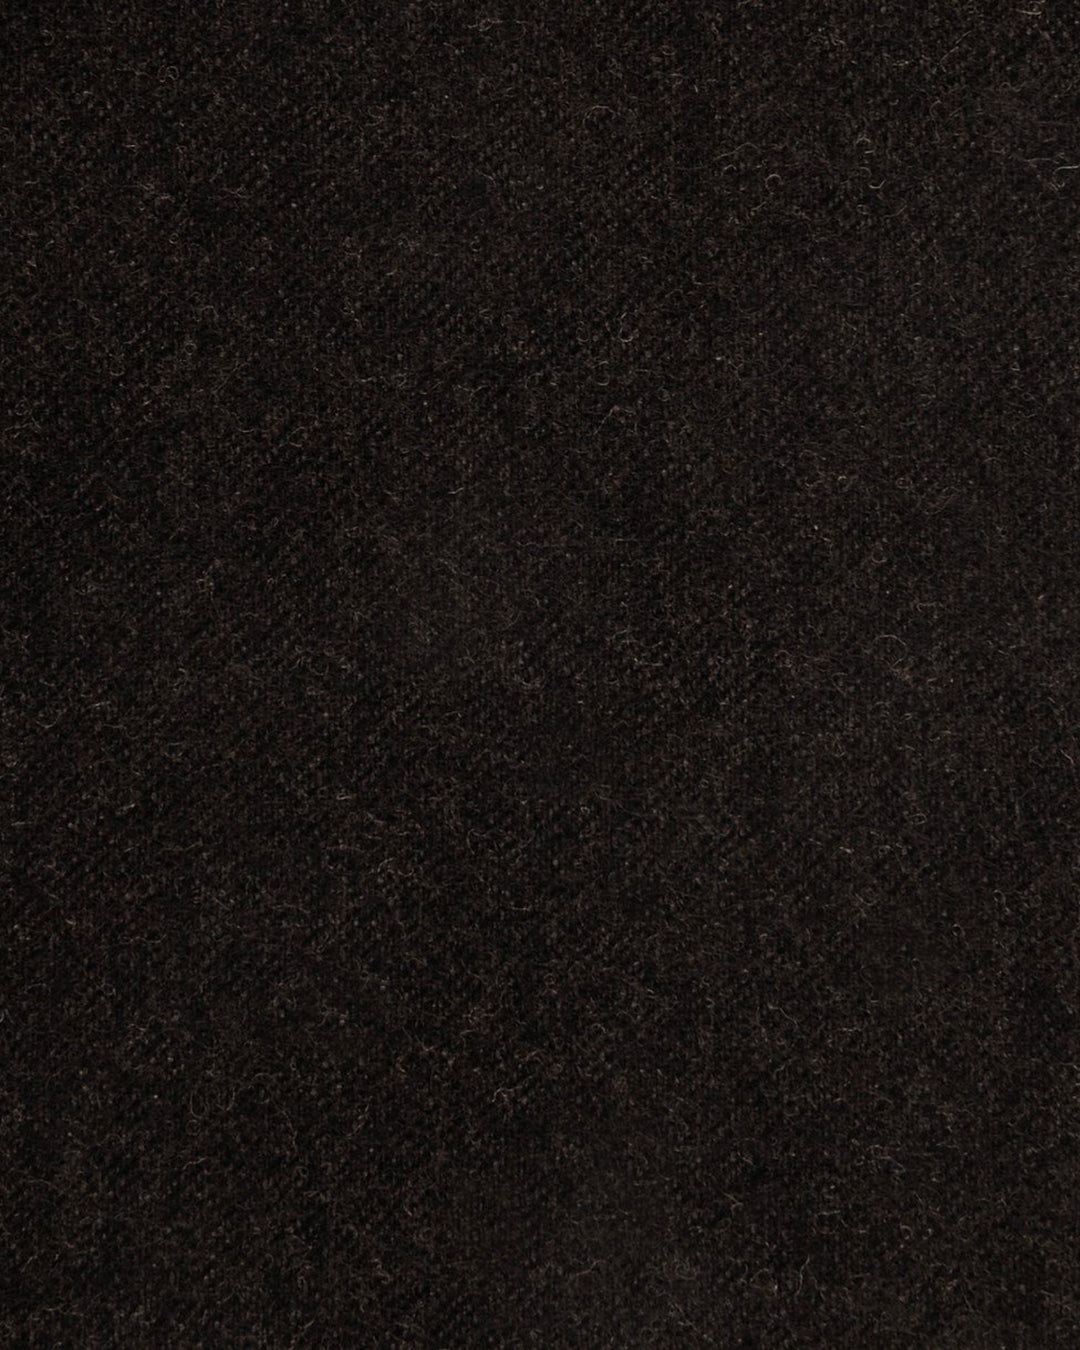 VBC Jacket: Dark Chocolate Brown Flannel